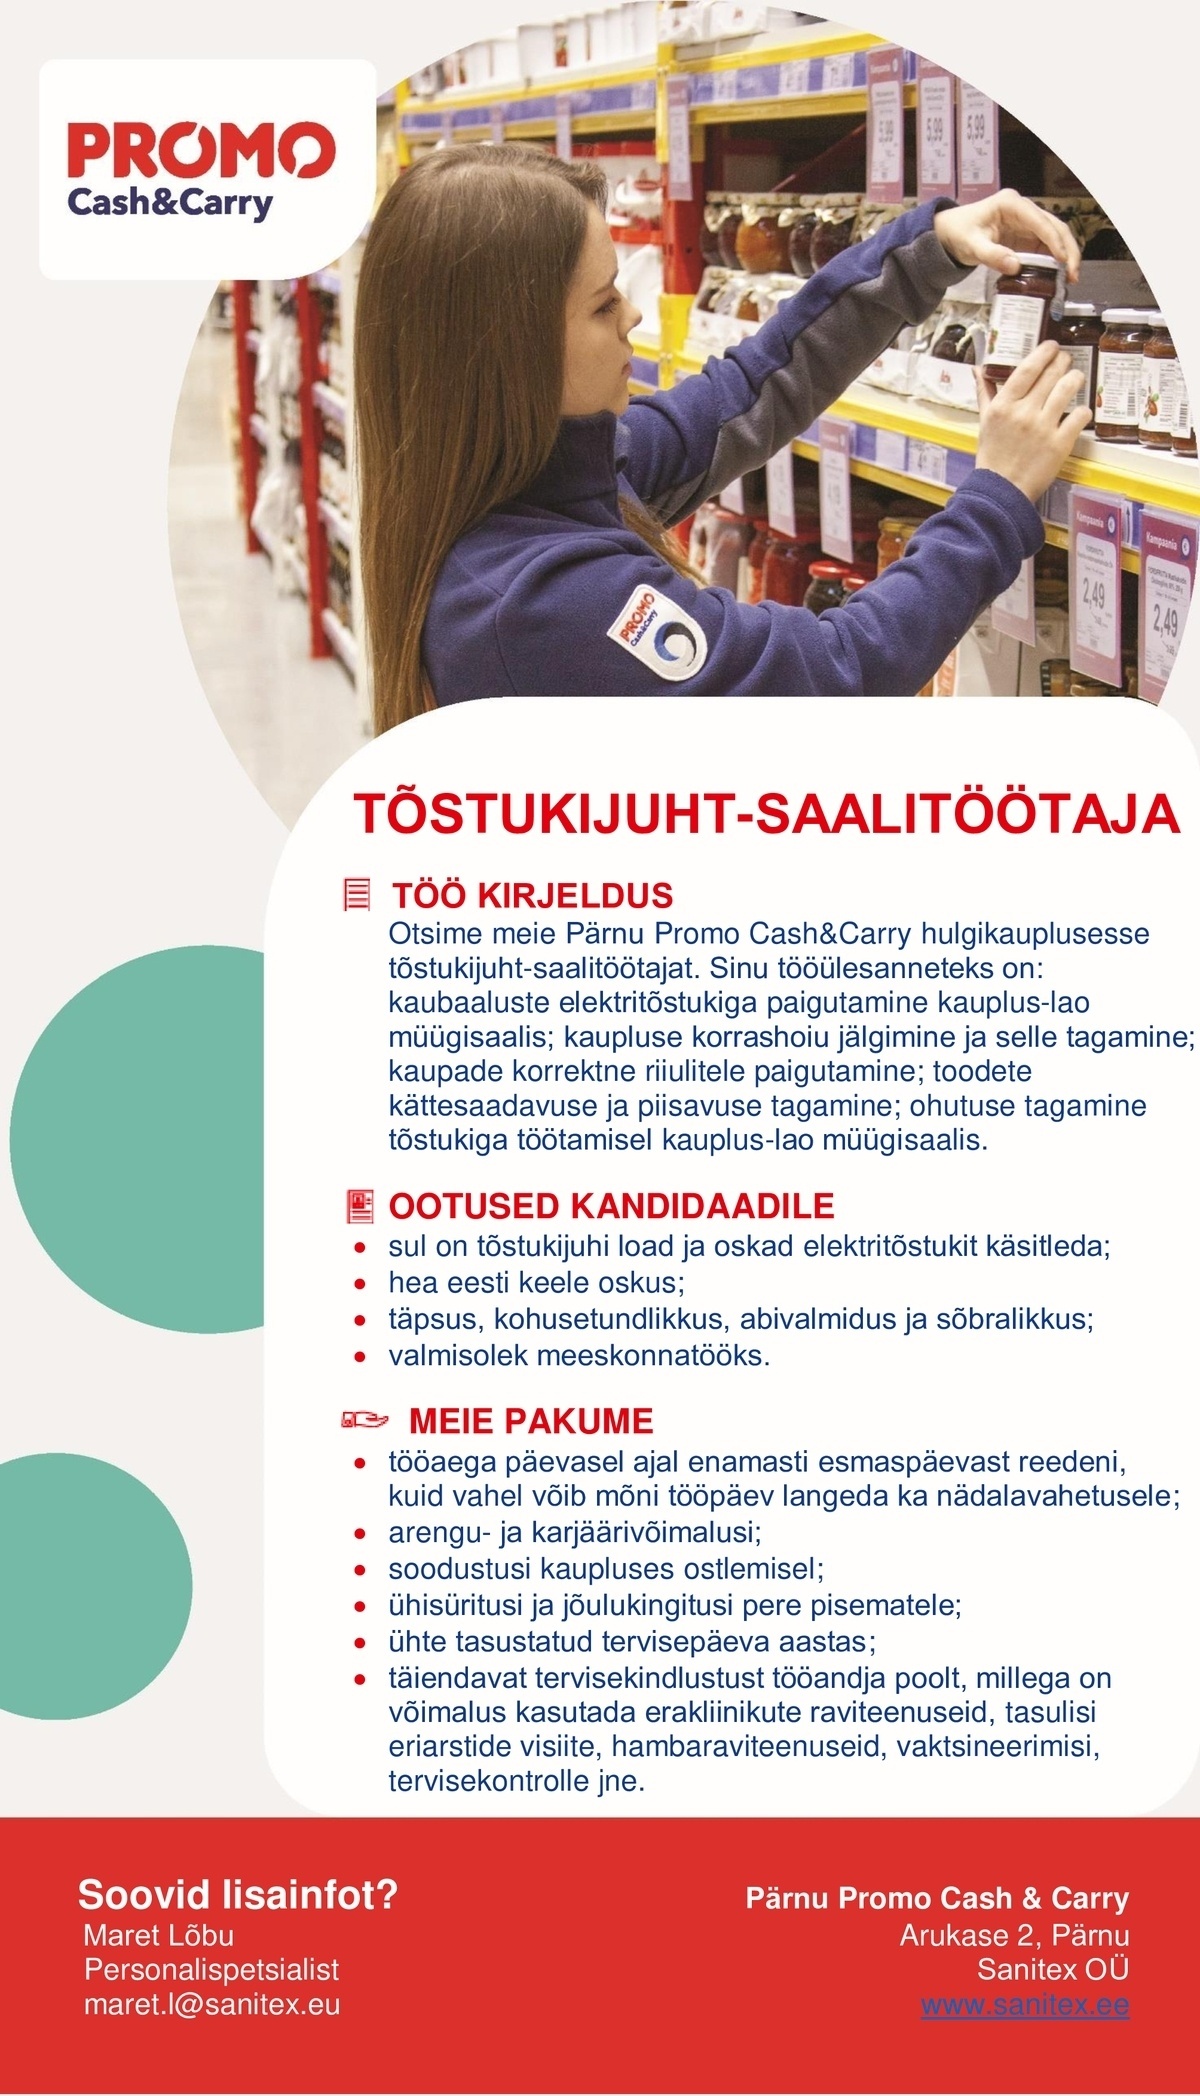 Sanitex OÜ Tõstukijuht - saalitöötaja Pärnu Promo Cash&Carry hulgikaupluses